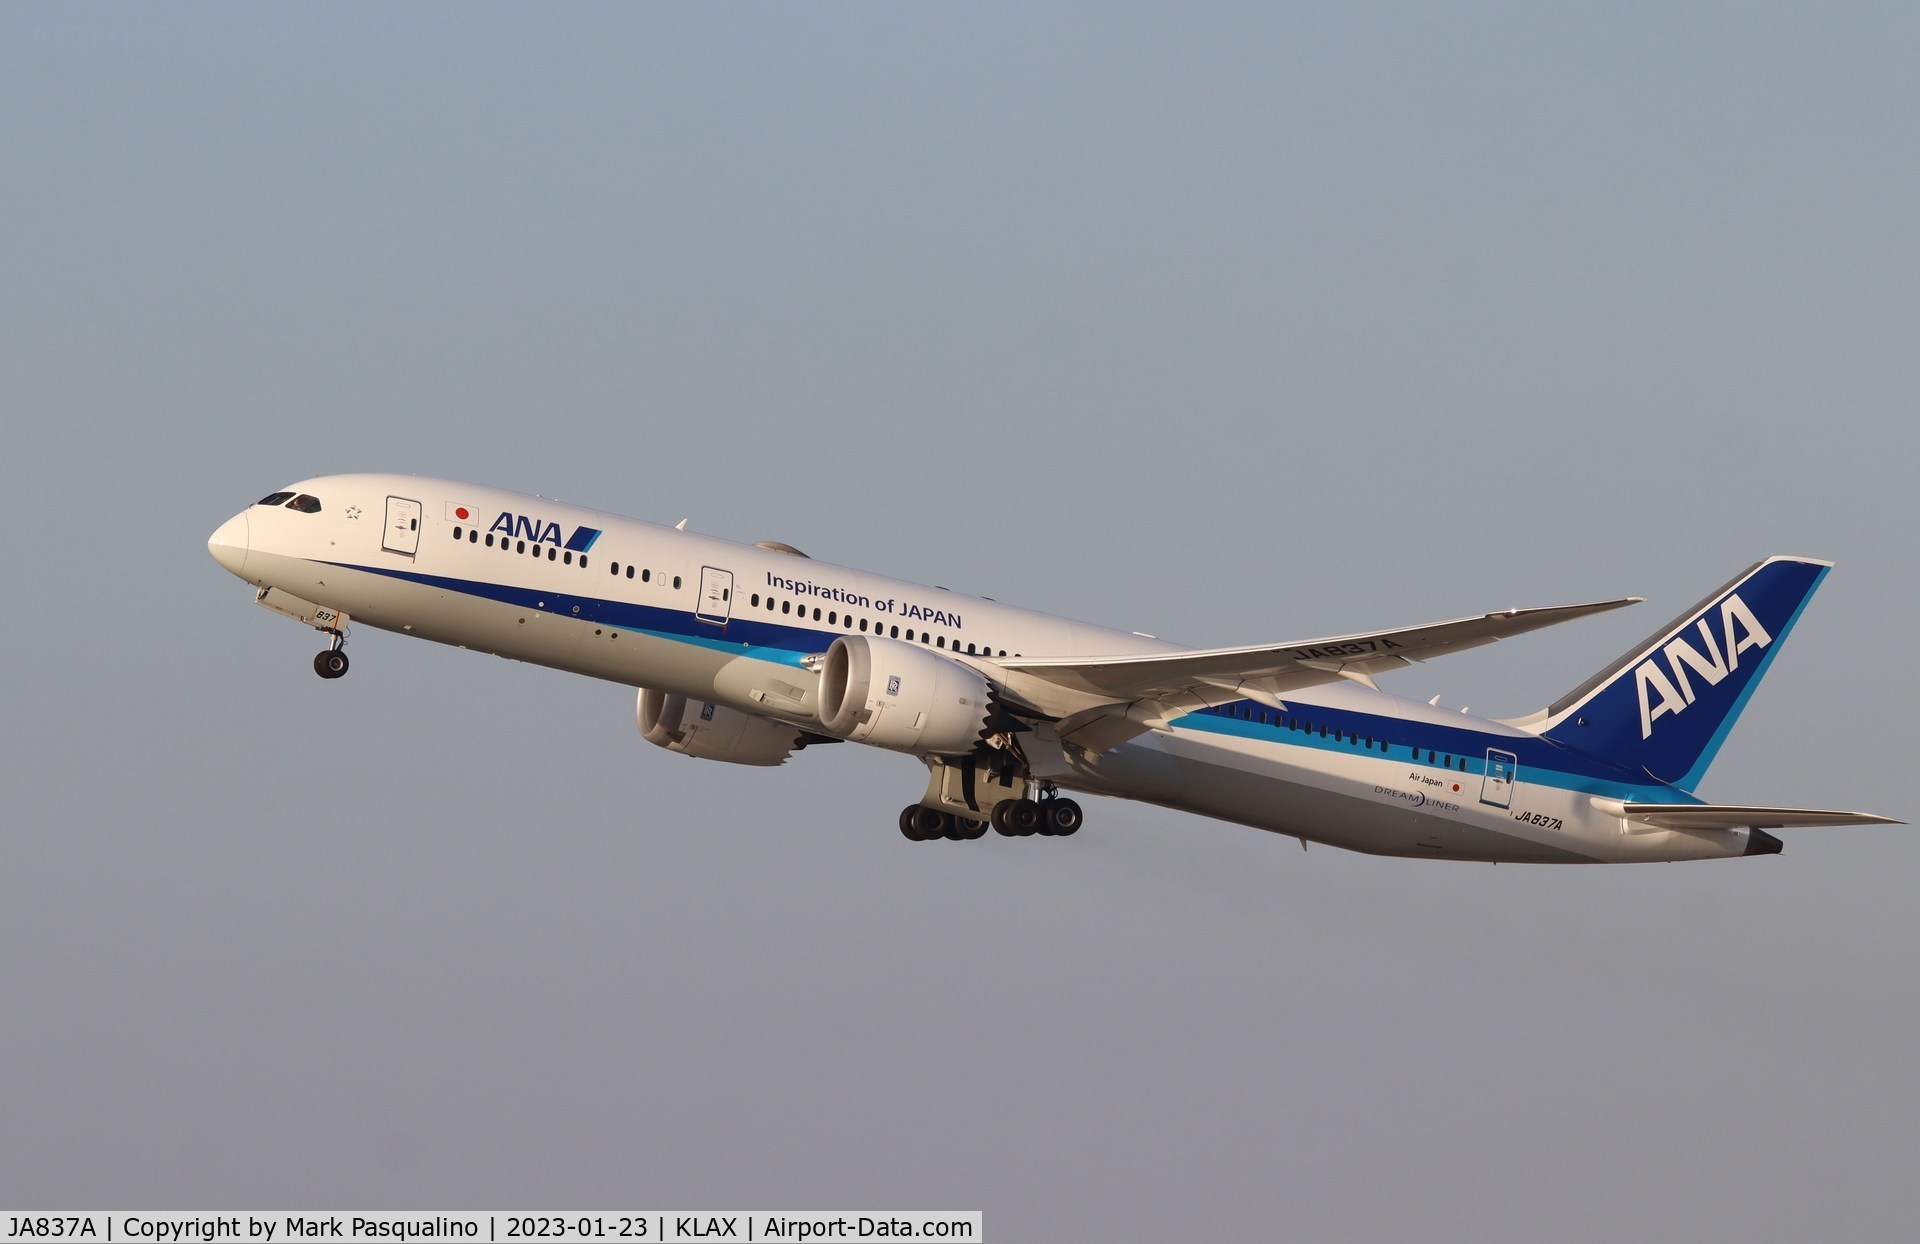 JA837A, 2015 Boeing 787-9 Dreamliner C/N 34526, Boeing 787-9